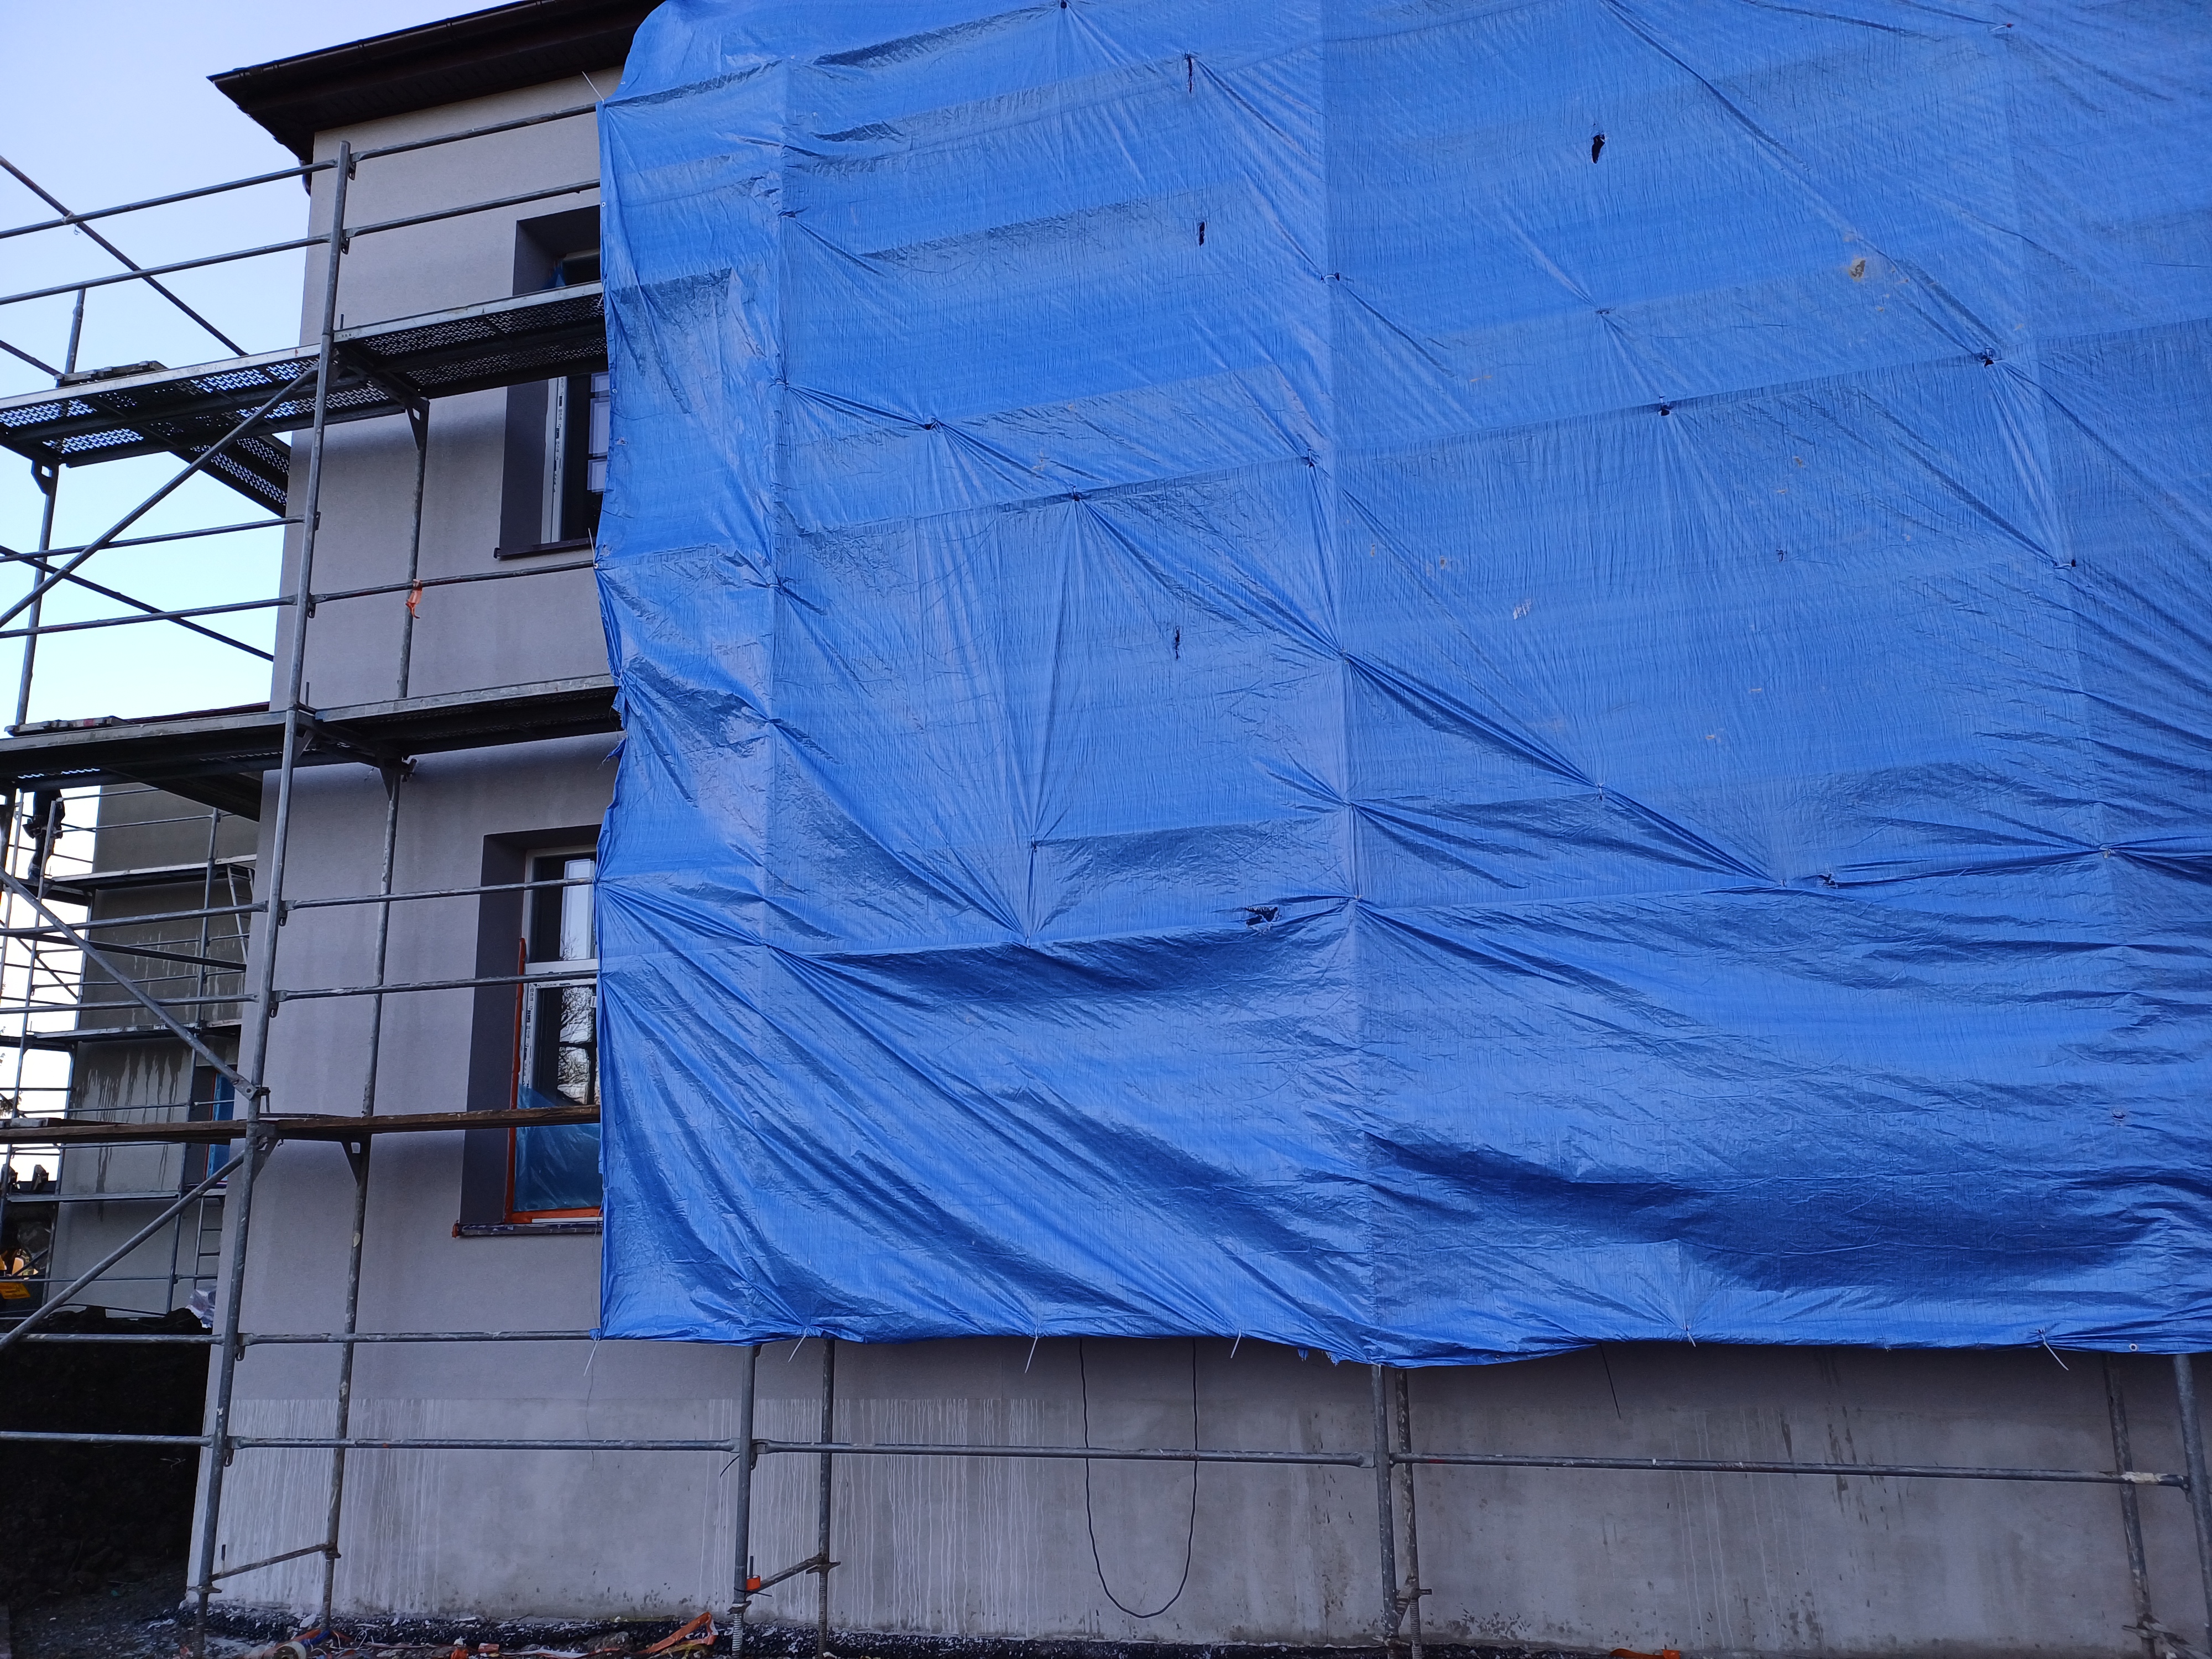 Zdjęcie przedstawia fragment budynku , obłożony rusztowaniem i częściowo zakryty niebieską plandeką.